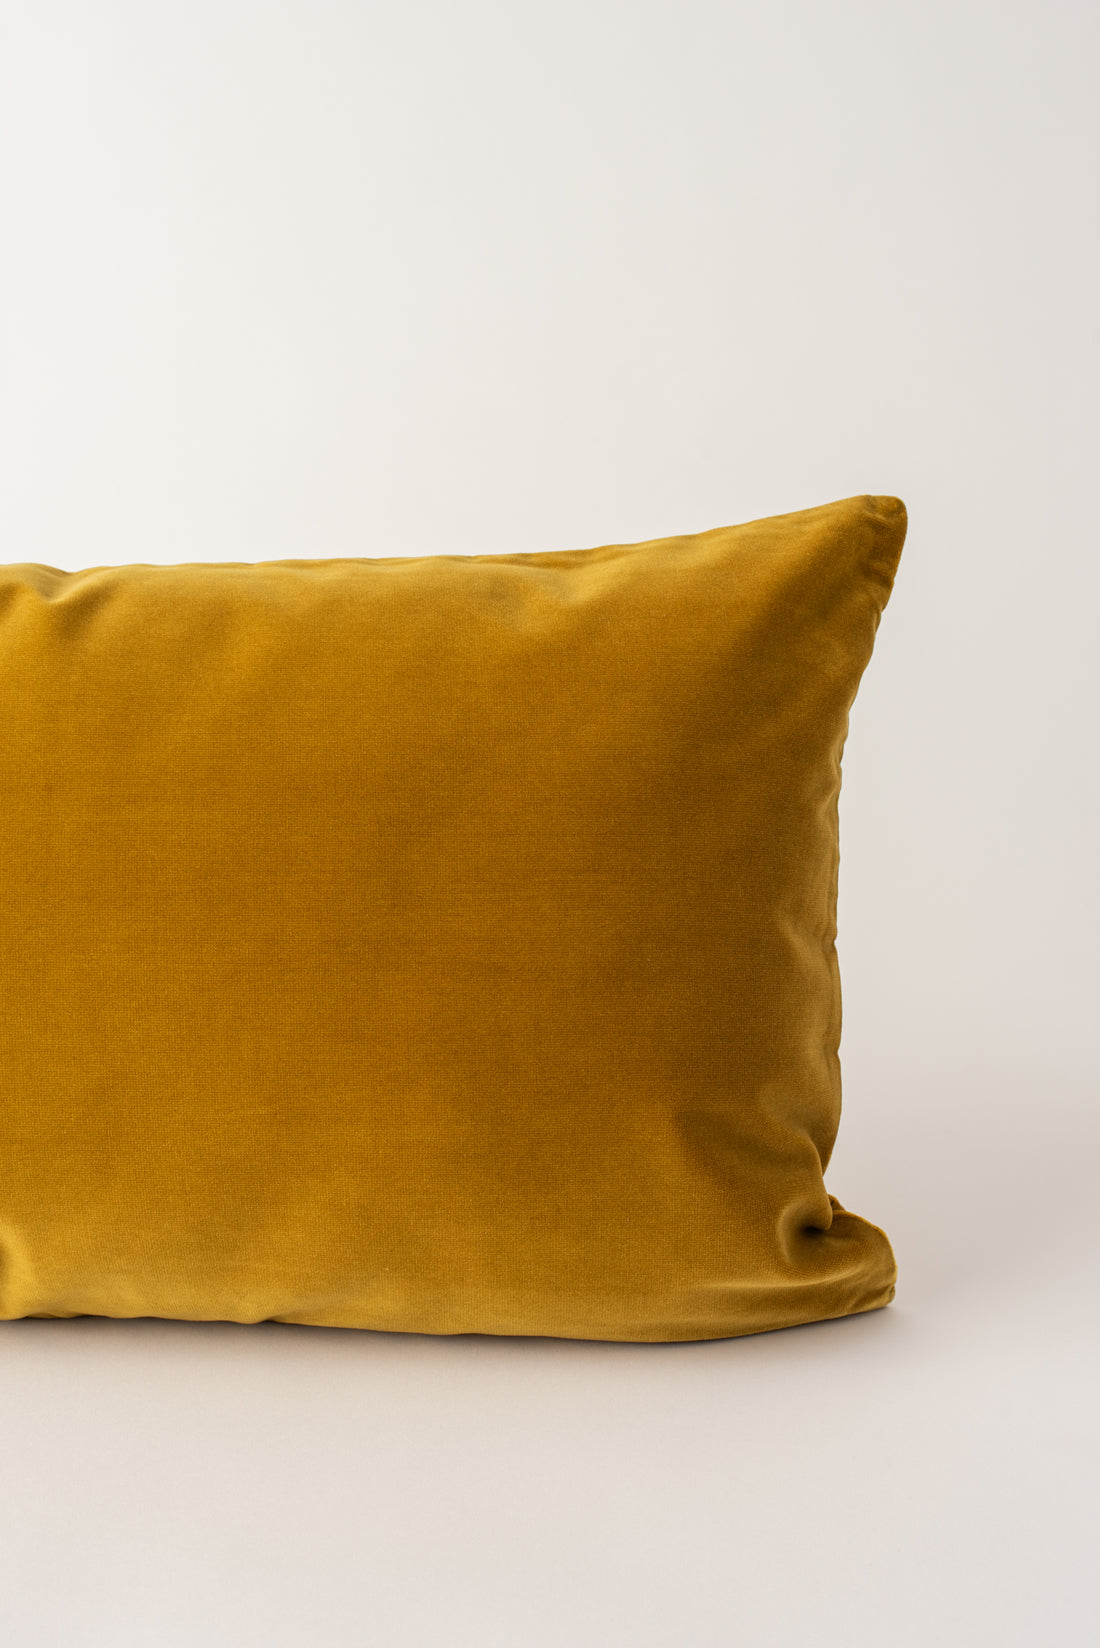 Kindred Cushion - Gold Velvet Bolster